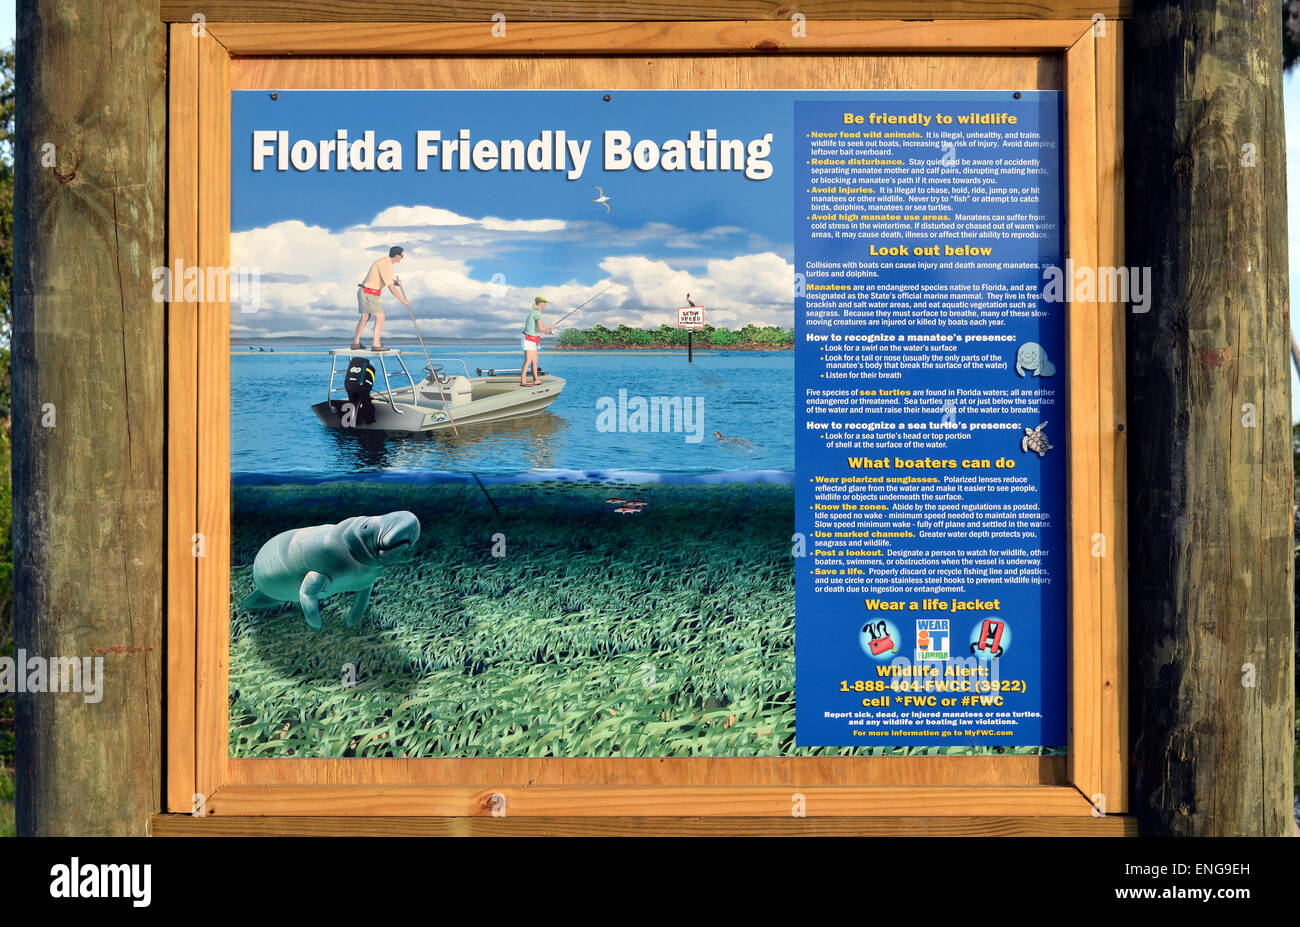 Un segno illustrato in corrispondenza di una barca sito di lancio esorta tutti i naviganti per essere gentile a Florida wildlife, specialmente i lamantini, le tartarughe marine e delfini. Foto Stock